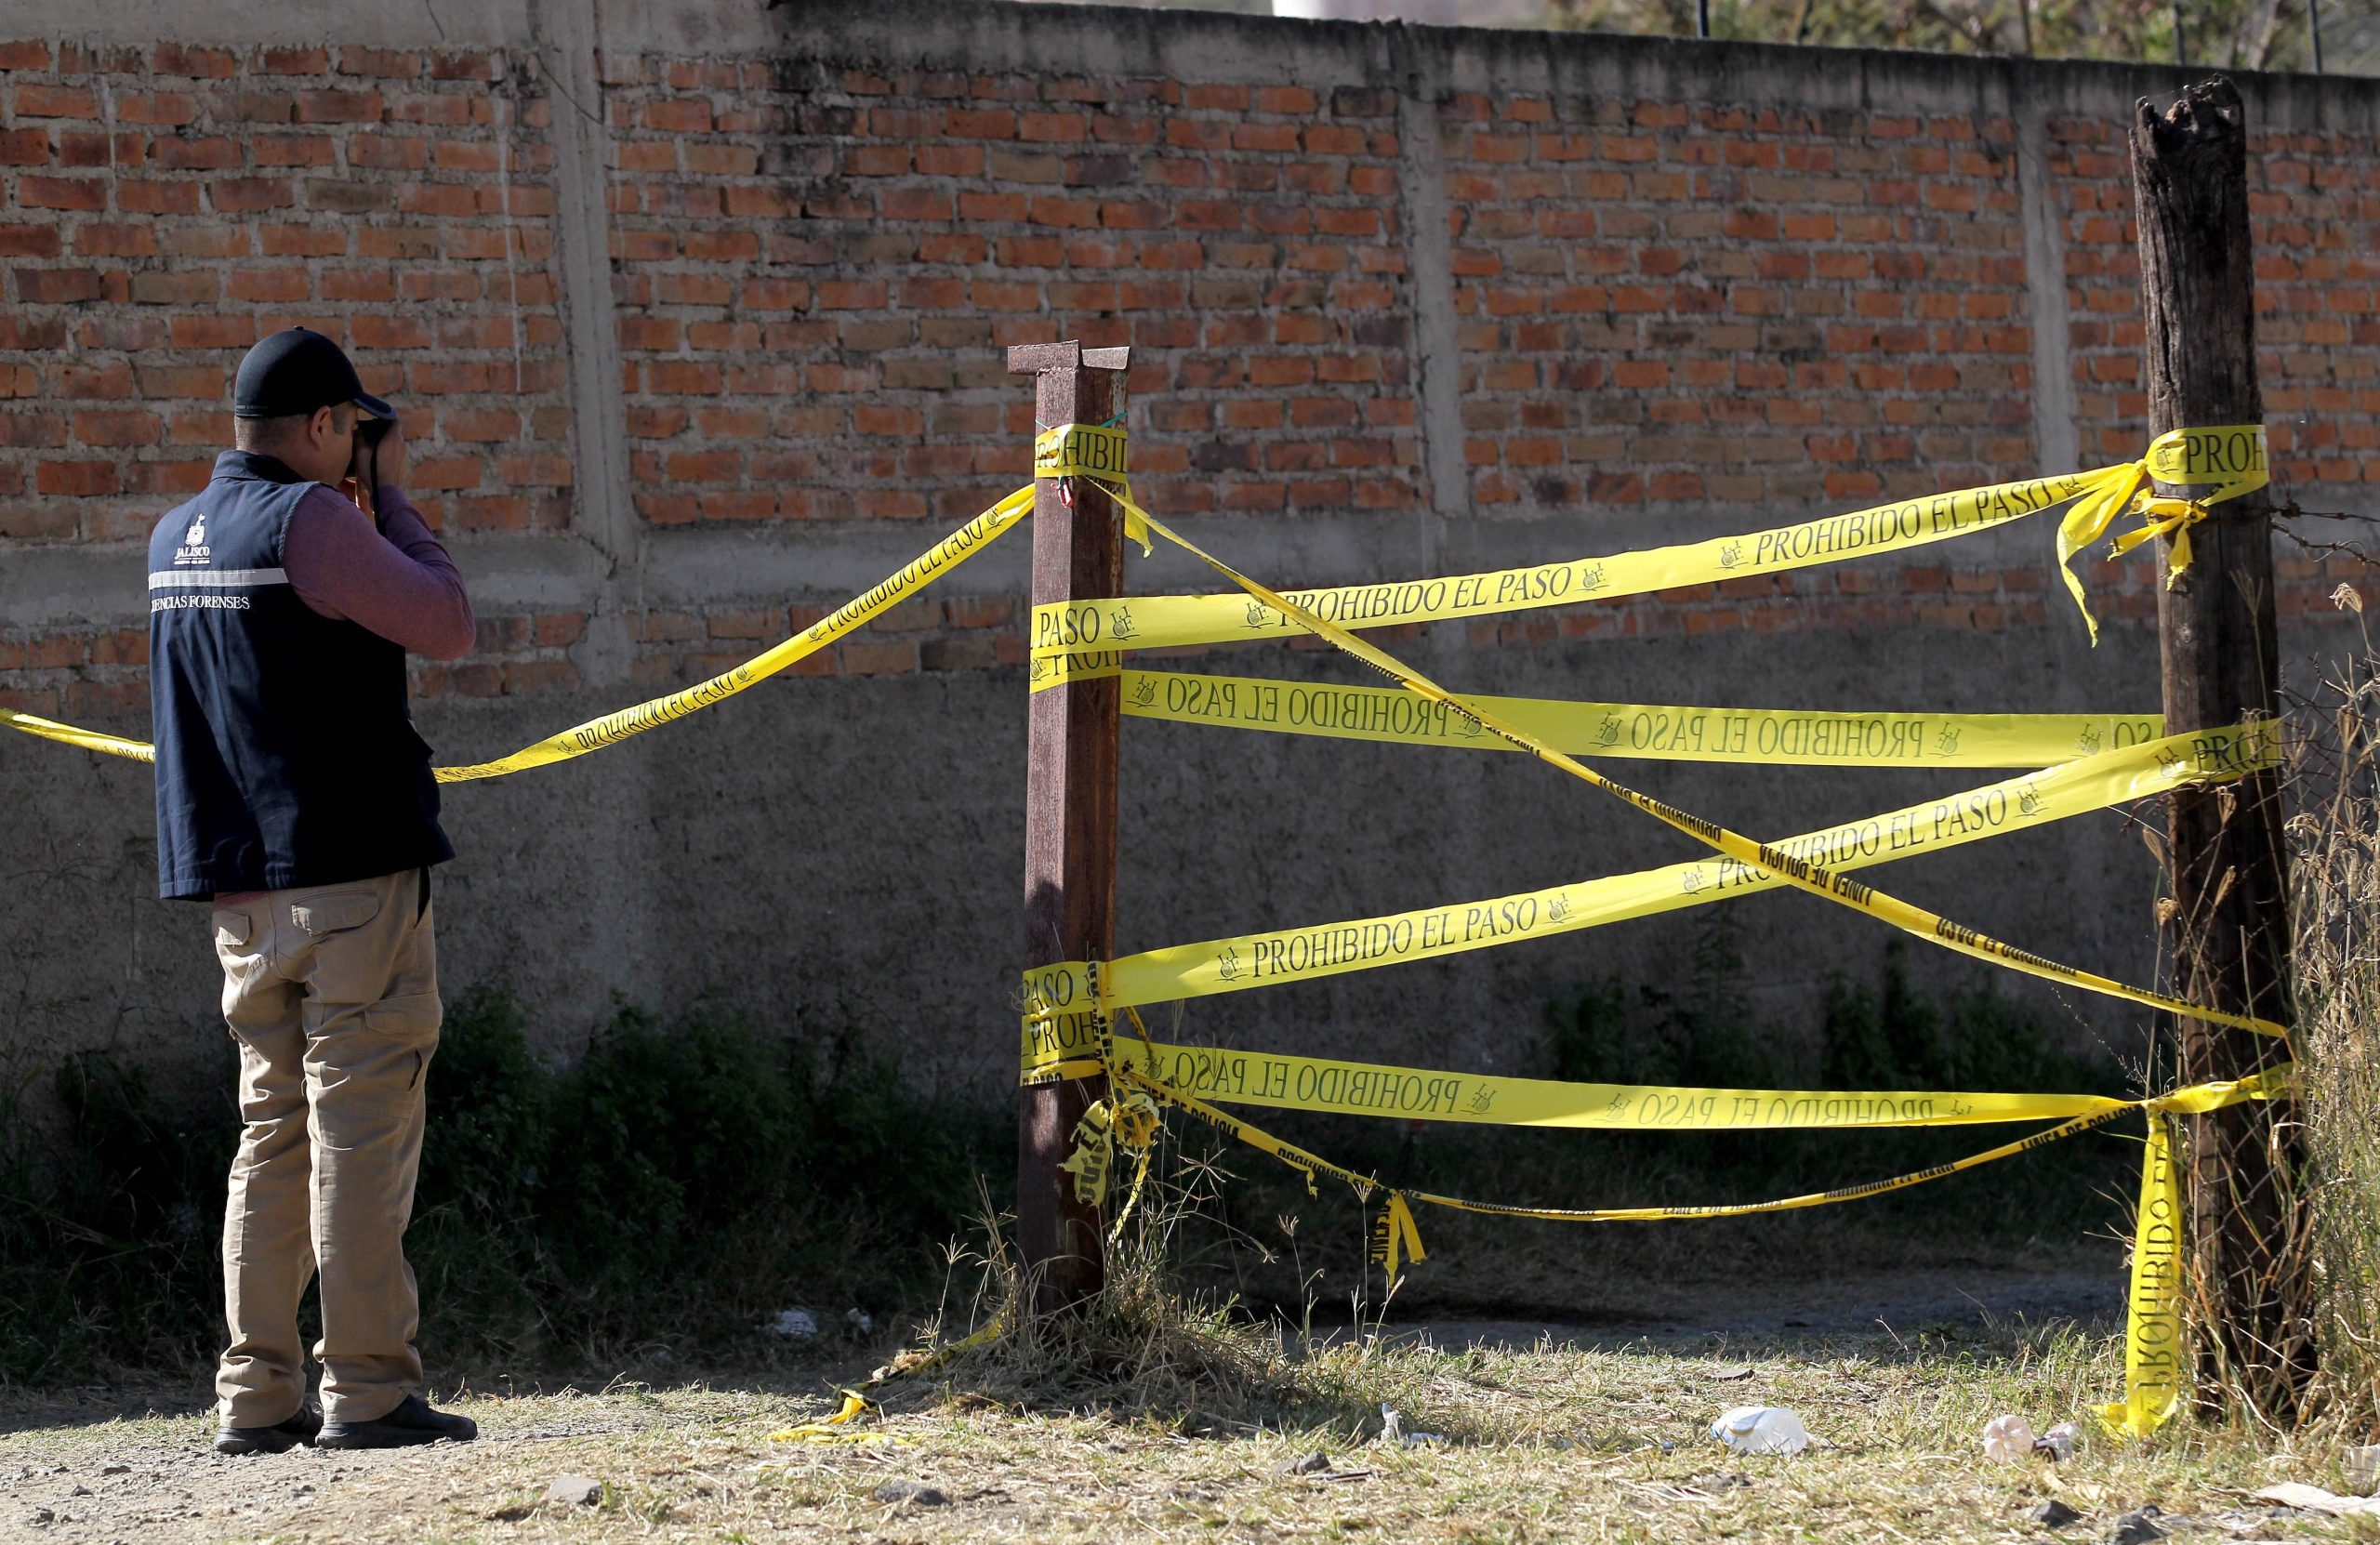 Encontrada nova vala comum com 29 cadáveres no México